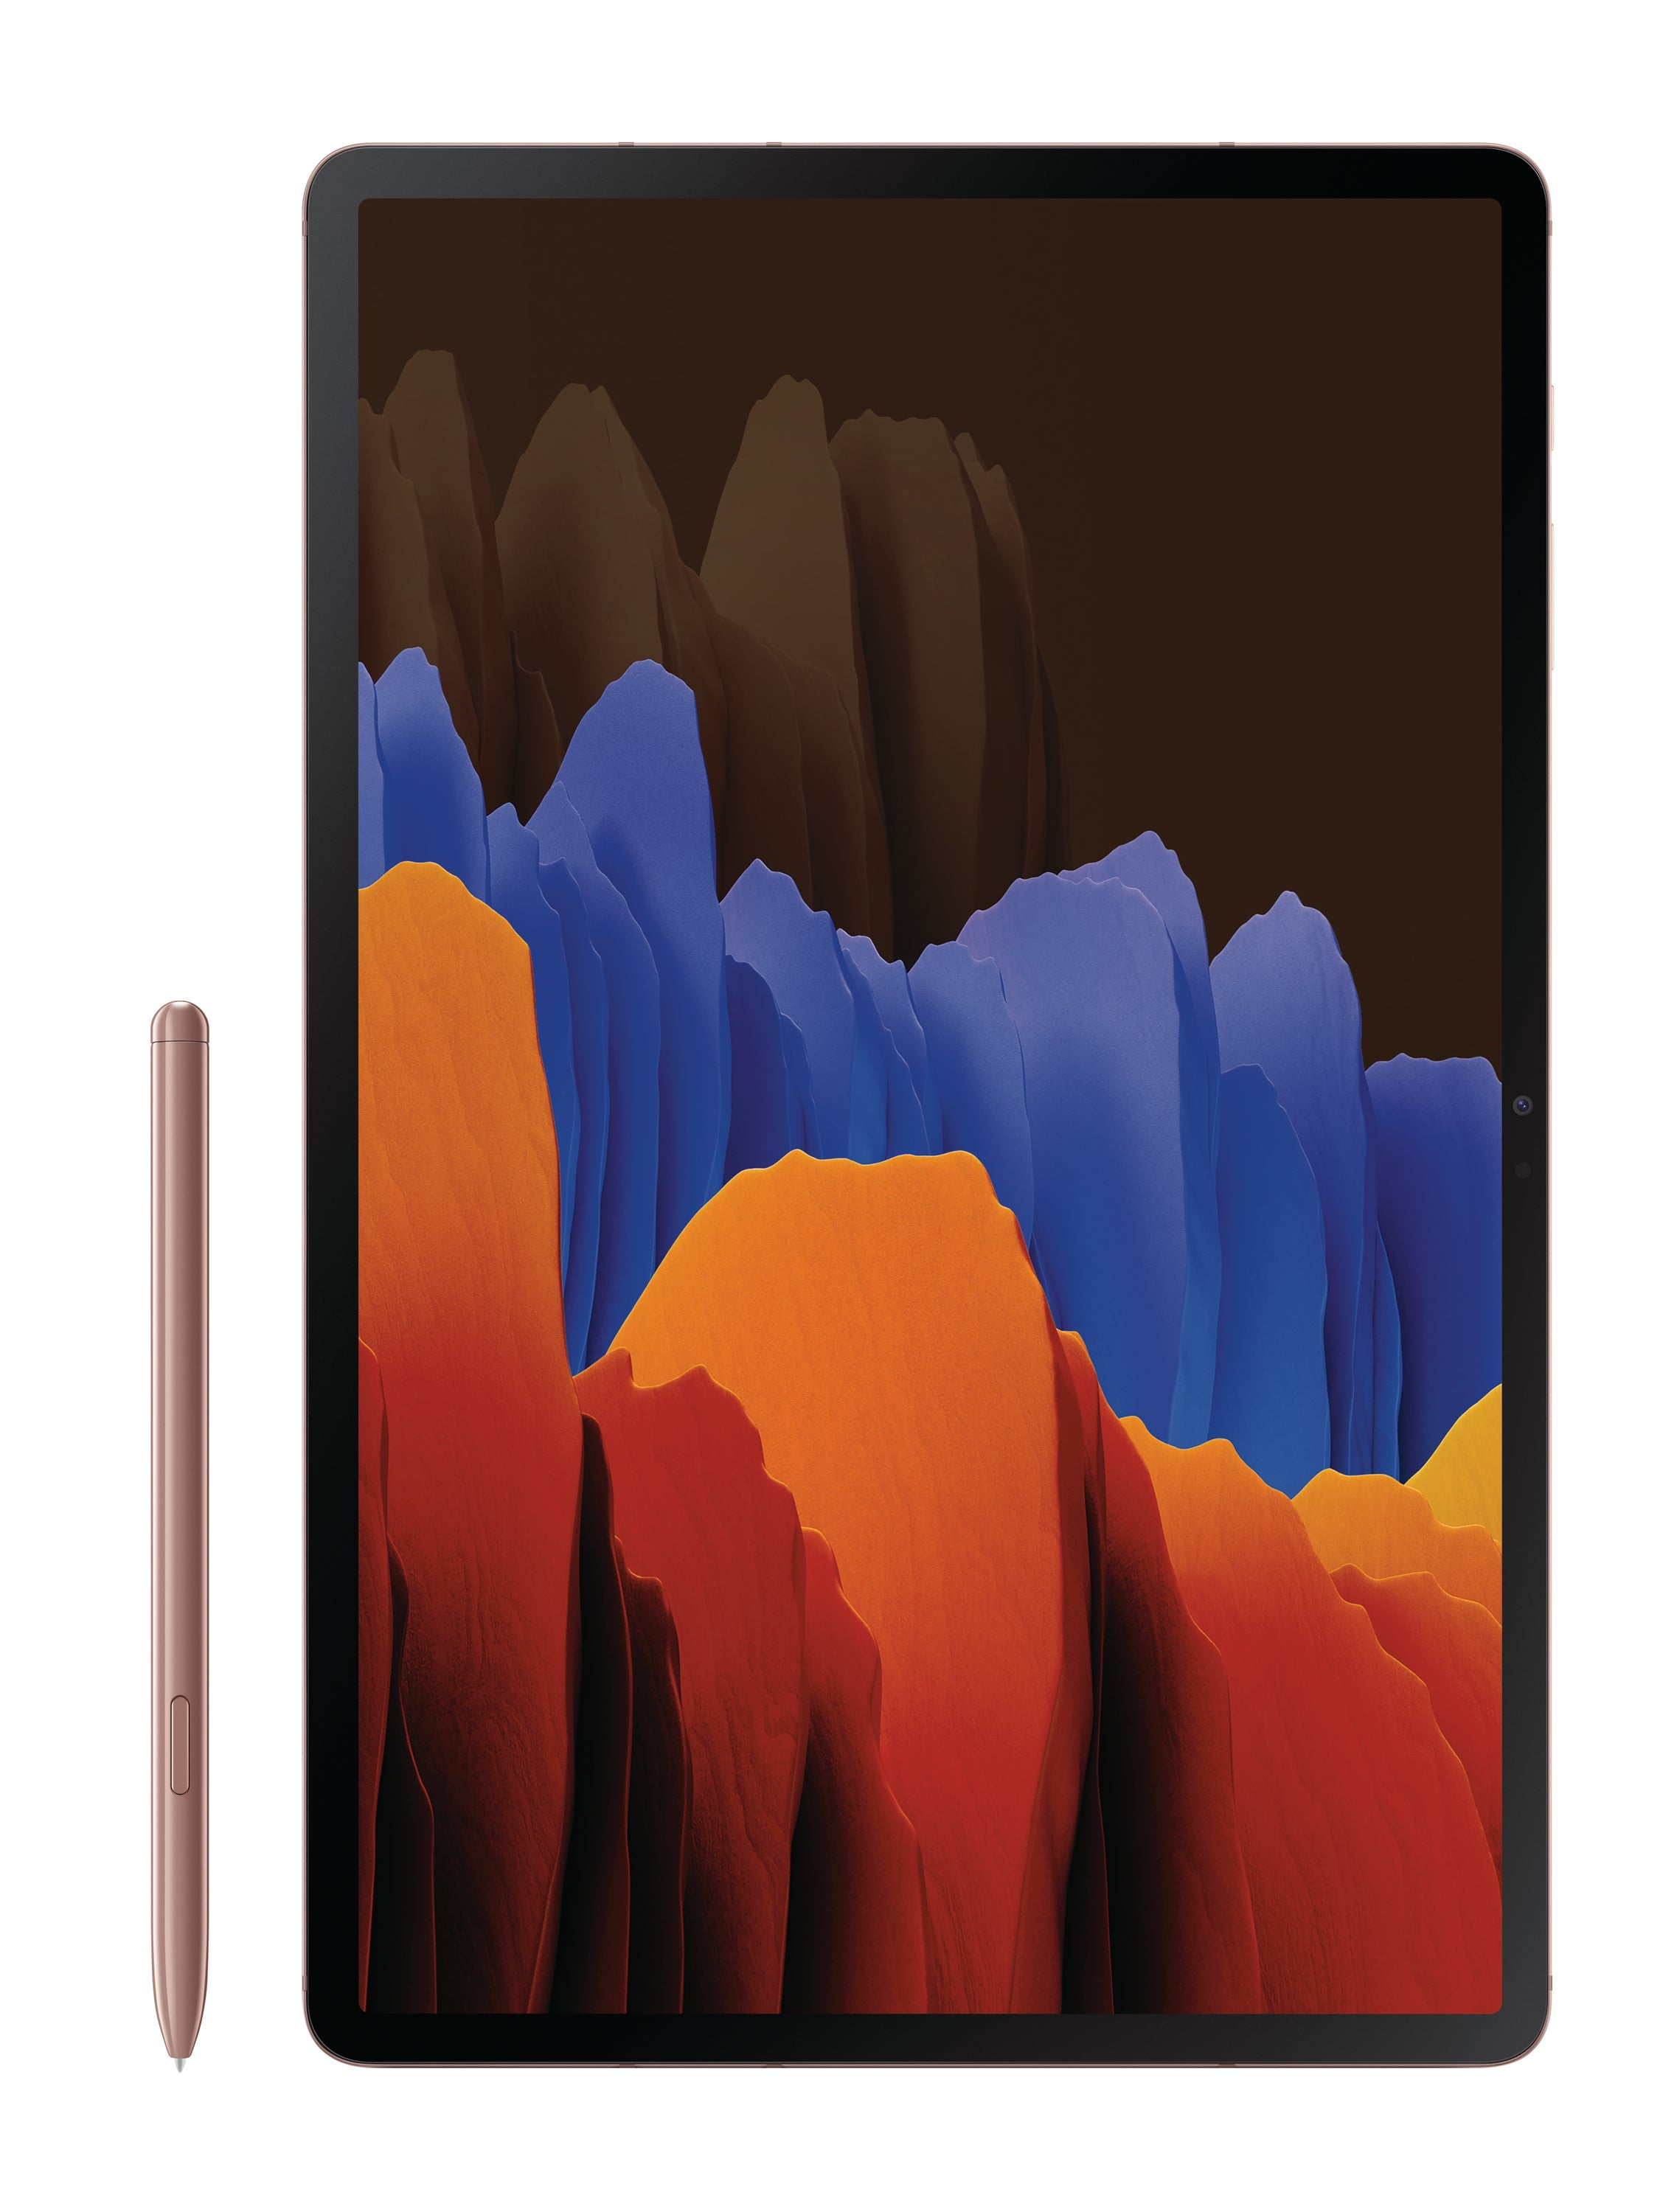 超美品の Tab 【Sペン付】Galaxy S7 US版 Bronze Mystic タブレット